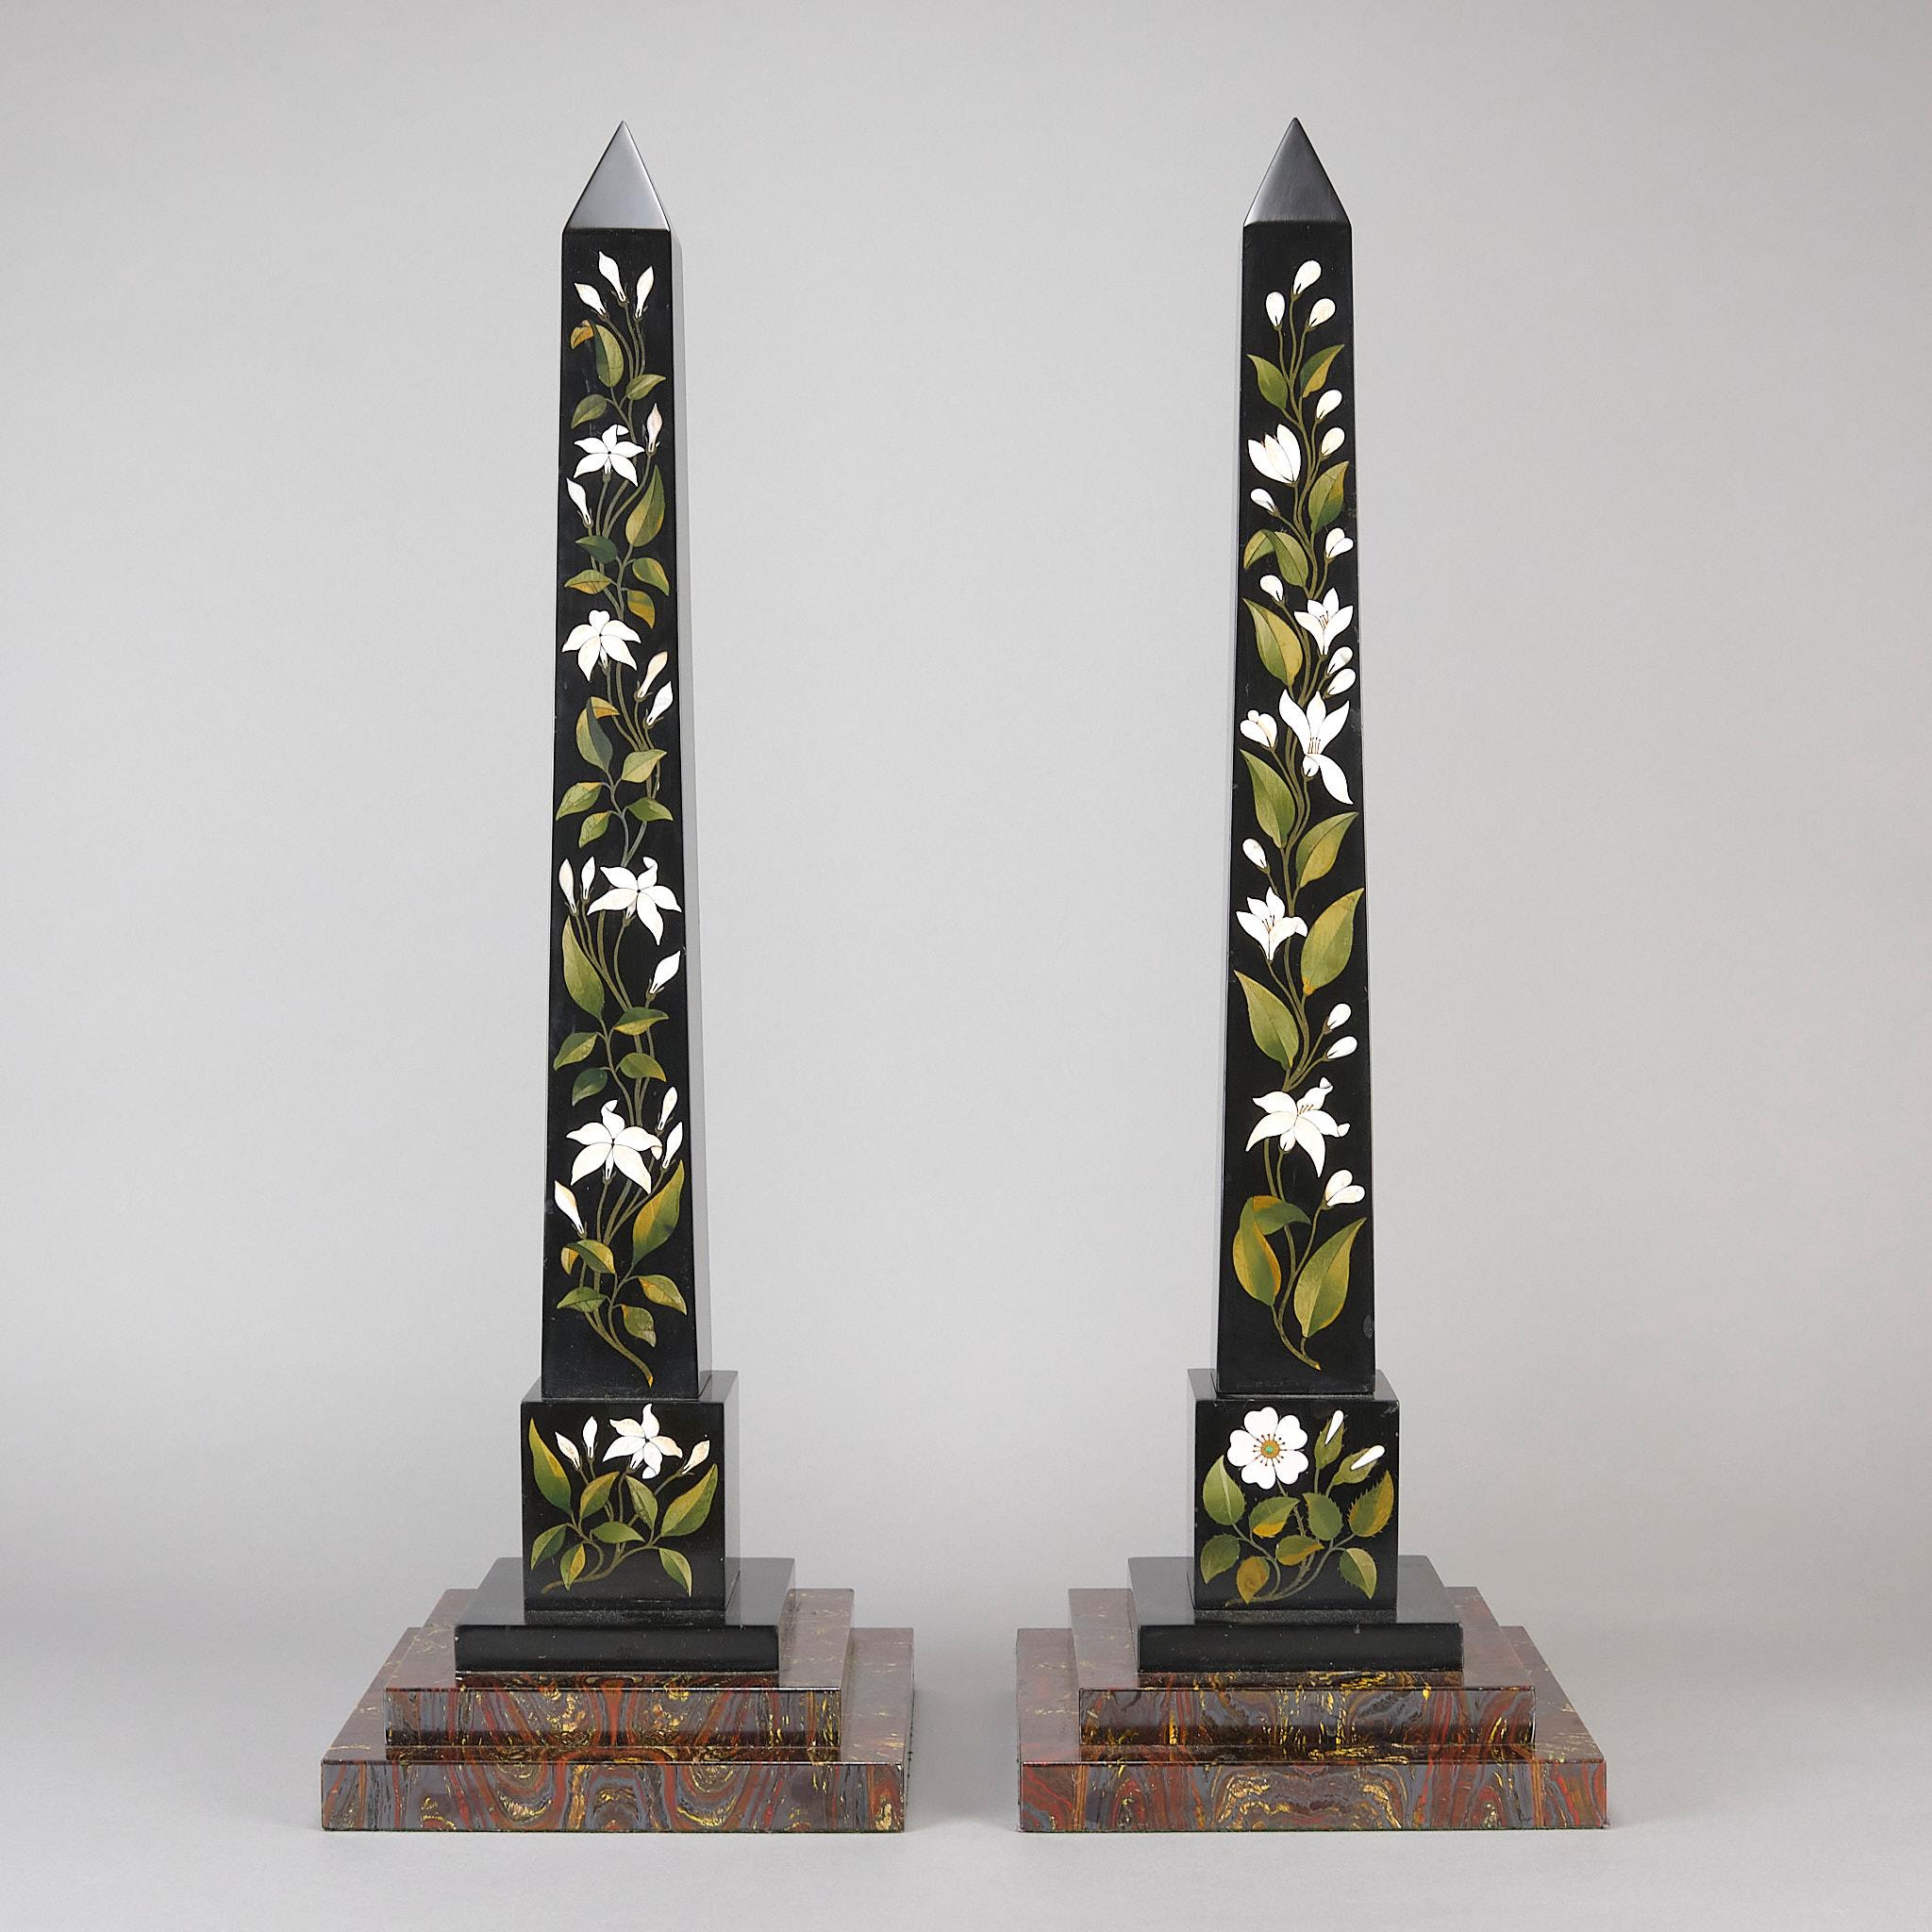 Ein ausgezeichnetes Paar Obelisken aus schwarzem Ashford-Marmor aus der Mitte des 19. Jahrhunderts mit Intarsien aus einer Auswahl von Marmorproben, die auf der Vorderseite jeder Säule in dekorativer floraler Weise angebracht sind und auf gestuften